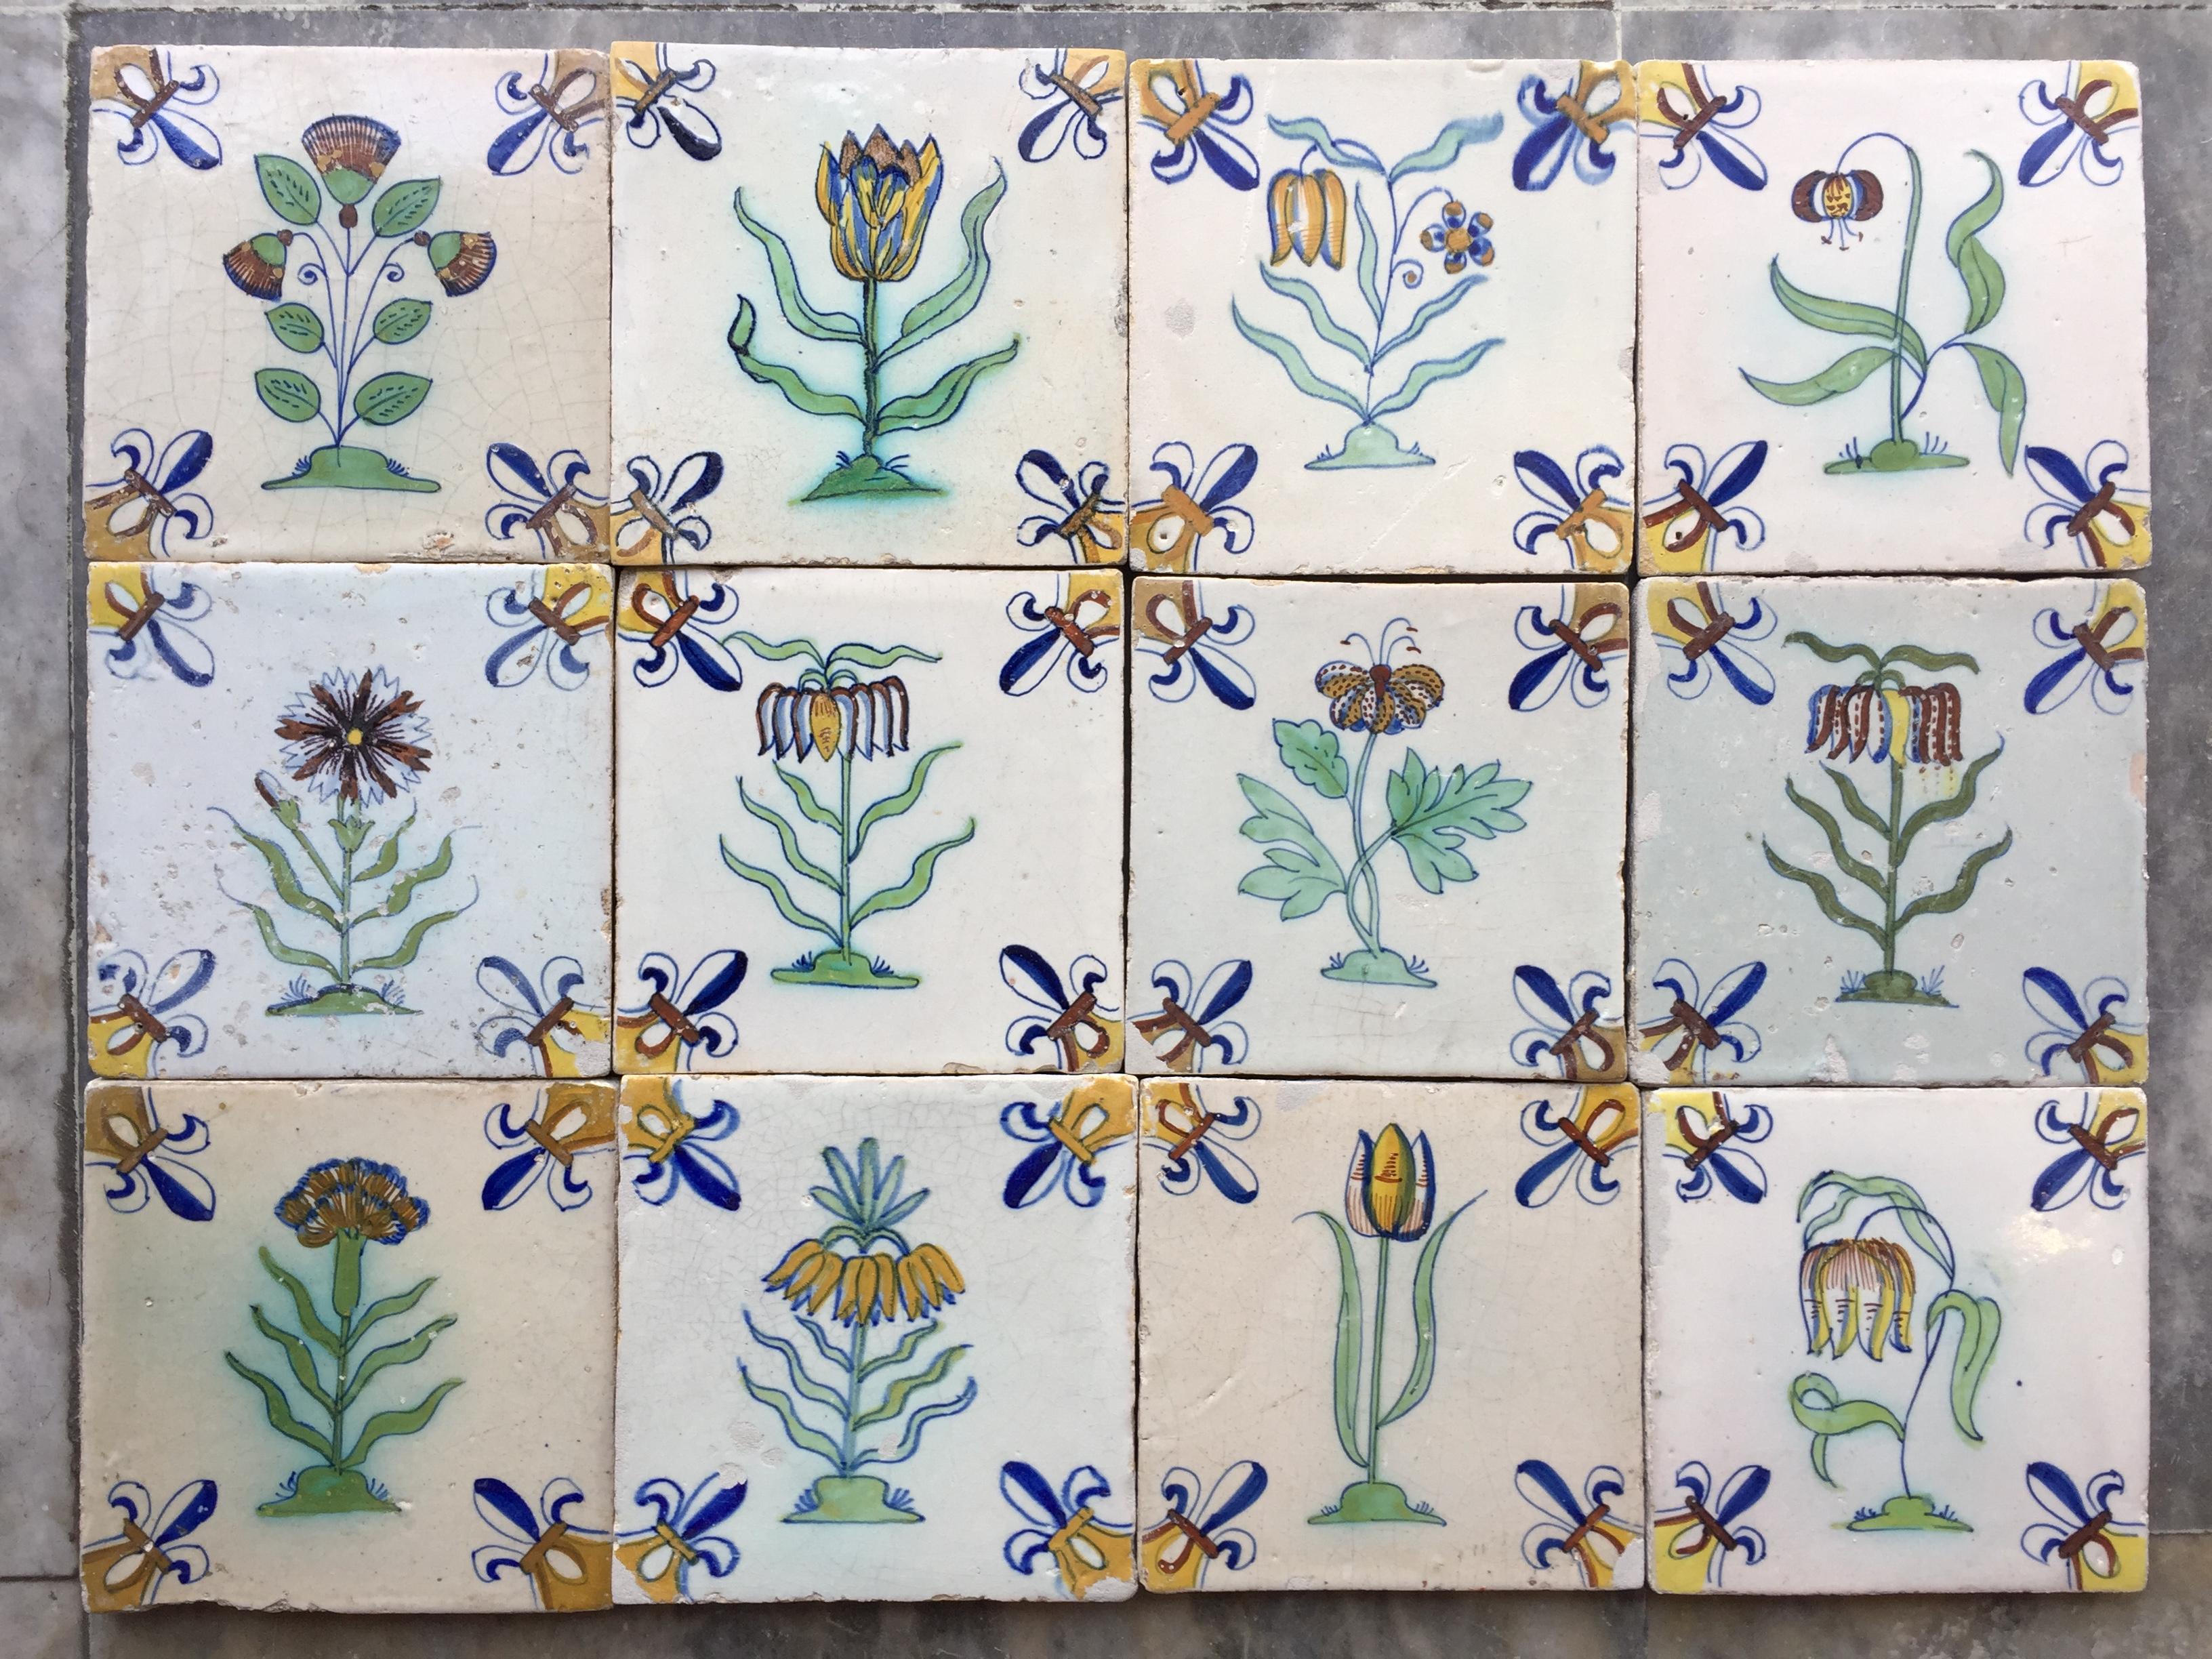 Ein seltener Satz von 12 polychromen niederländischen Delft-Fliesen mit Blumen.
Hergestellt in den Niederlanden.
CIRCA 1625 - 1650.

Dieses Fliesenset ist von sehr guter Qualität und hat eine helle Glasur. Sie stammen aus dem zweiten Viertel des 17.